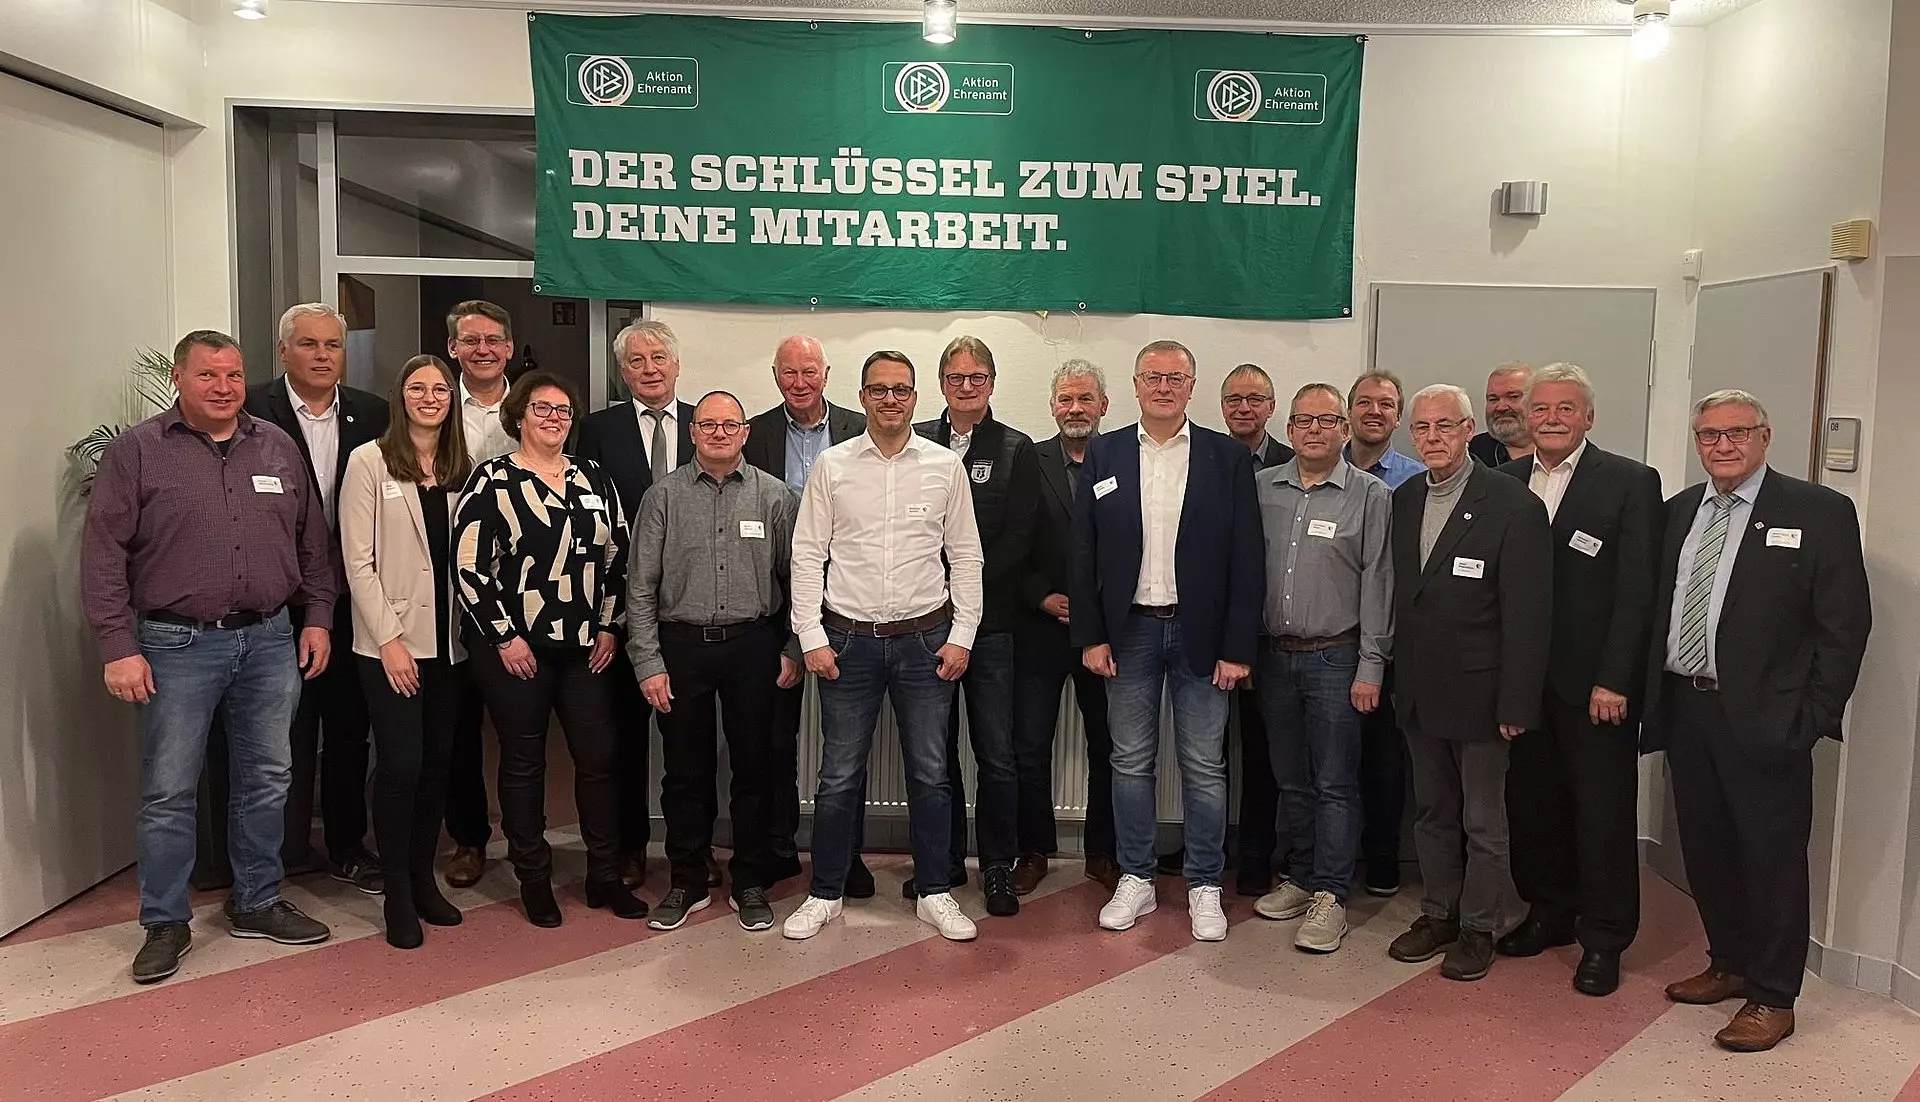 Die Geehrten bei der DFB-Ehrenamtsveranstaltung im Emsland. Foto: Diedrichs